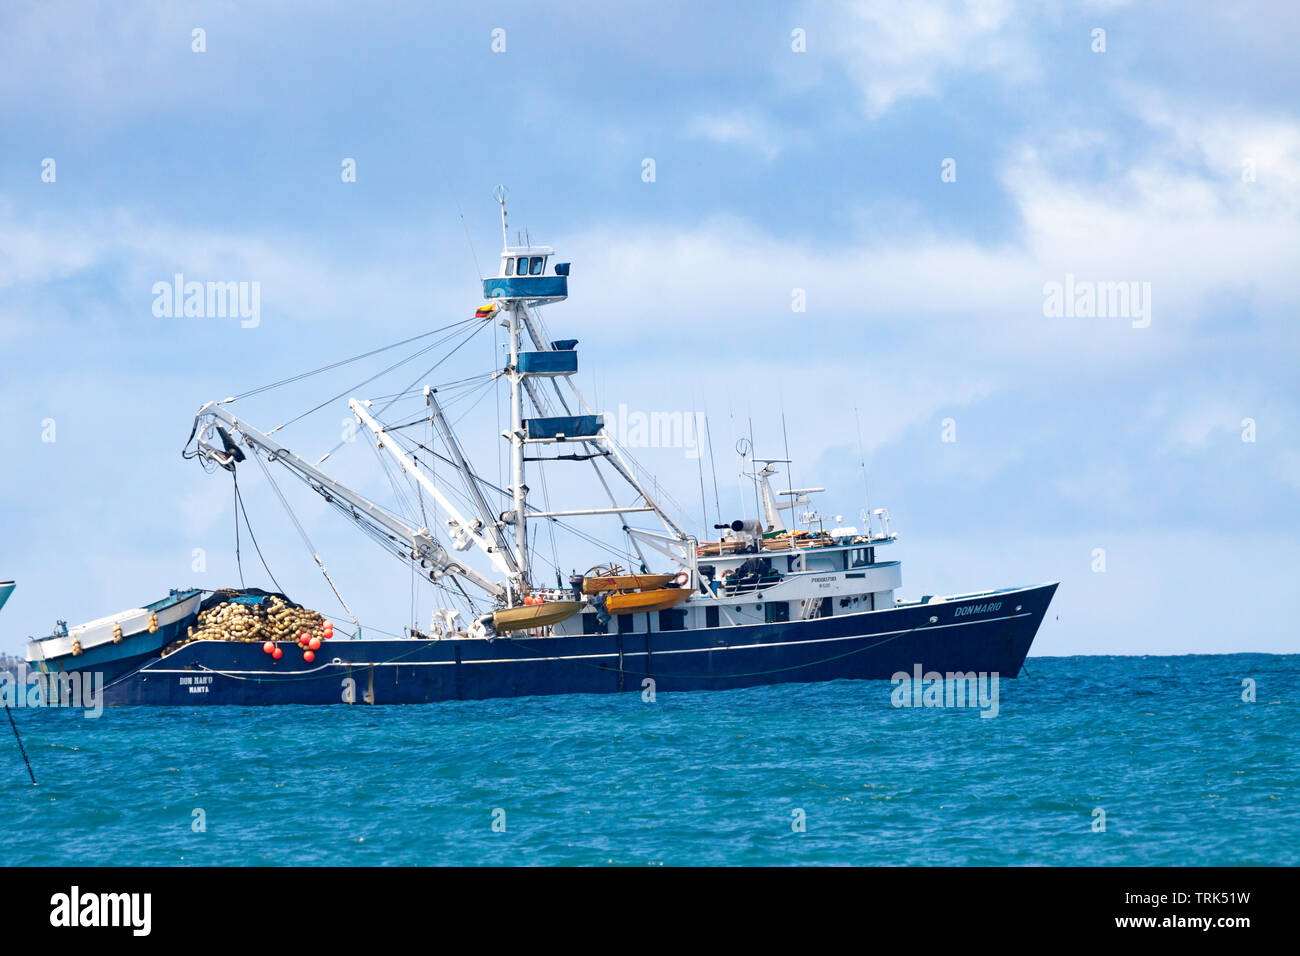 Le Don Mario est un 165 pieds de long Equadorian, senne, navire de pêche commerciale. Il est photographié ici à l'ancre dans la baie de l'Académie, au large de Puerto Ayora, t Banque D'Images